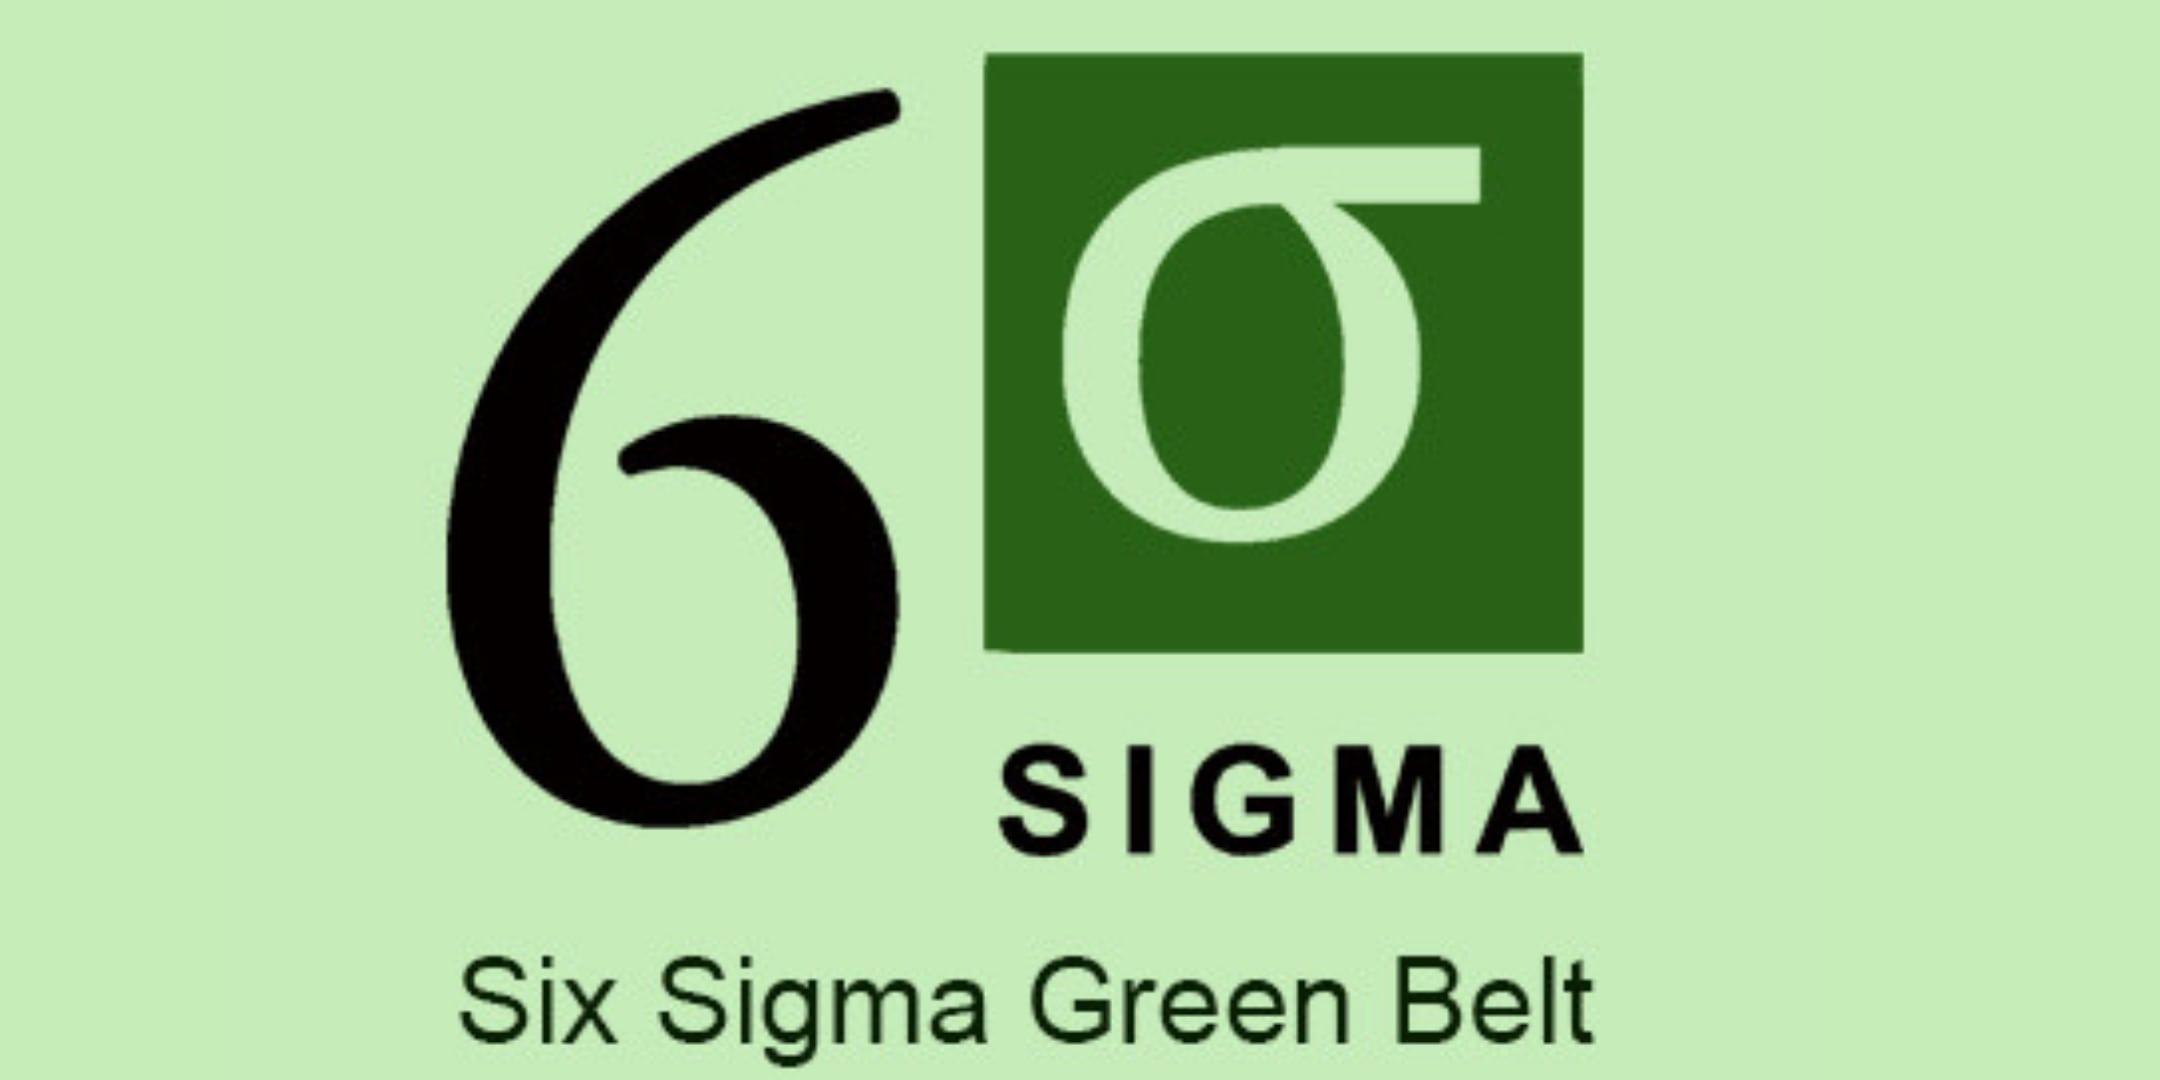 Lean Six Sigma Green Belt (LSSGB) Certification Training in Louisville, KY 